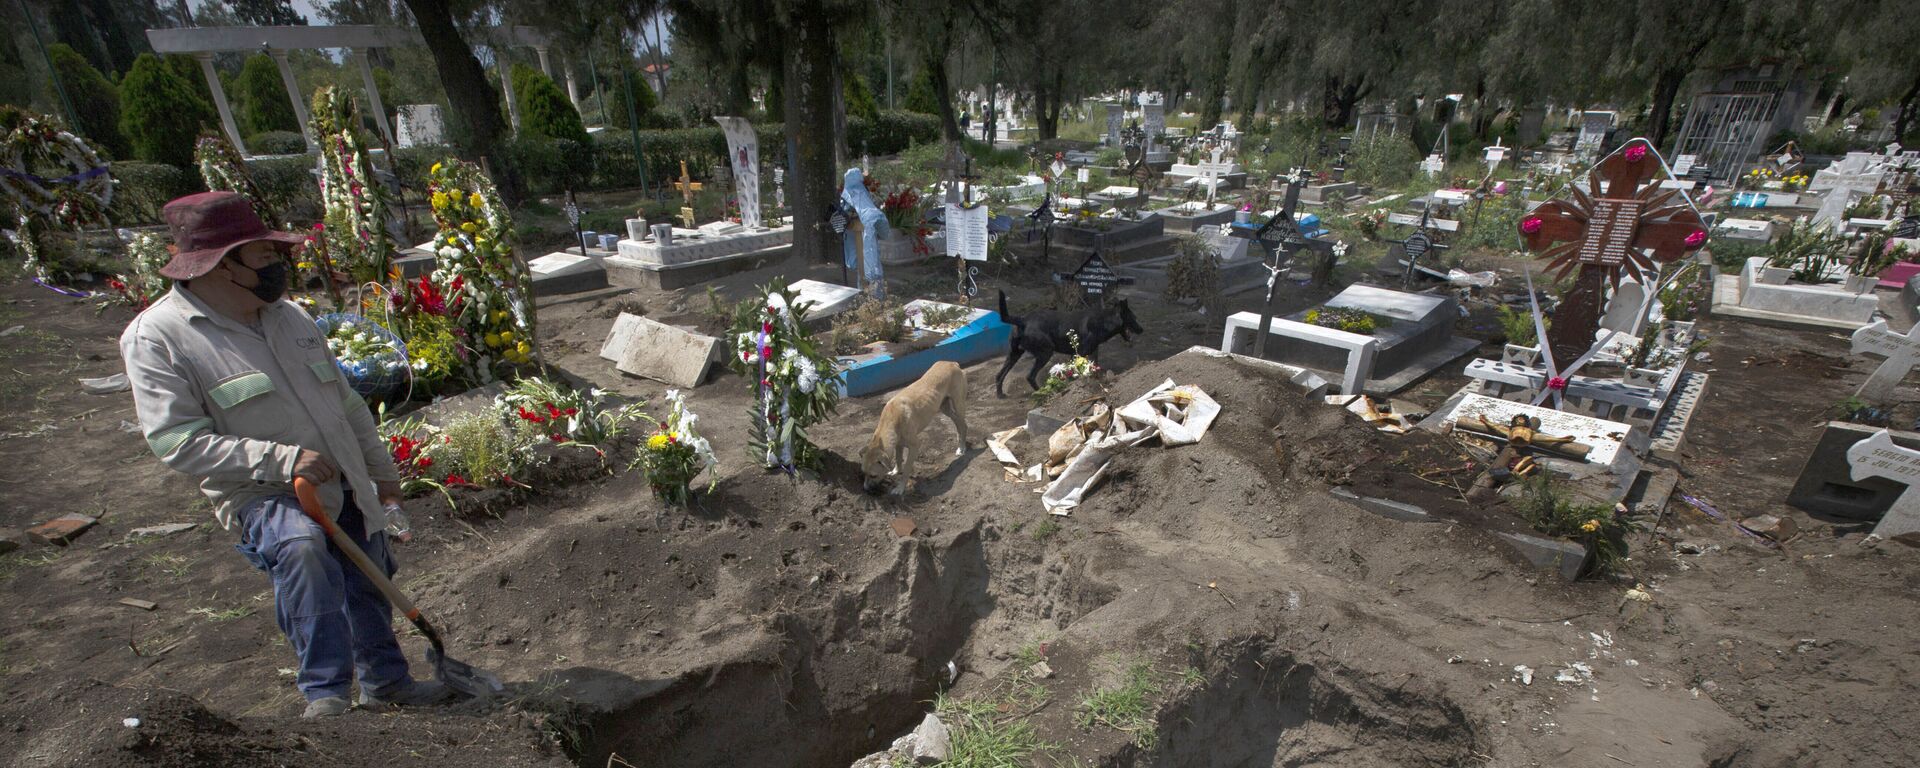 Un trabajador cava tumbas en la sección del COVID-19 del cementerio en las afueras de la Ciudad de México - Sputnik Mundo, 1920, 22.05.2021